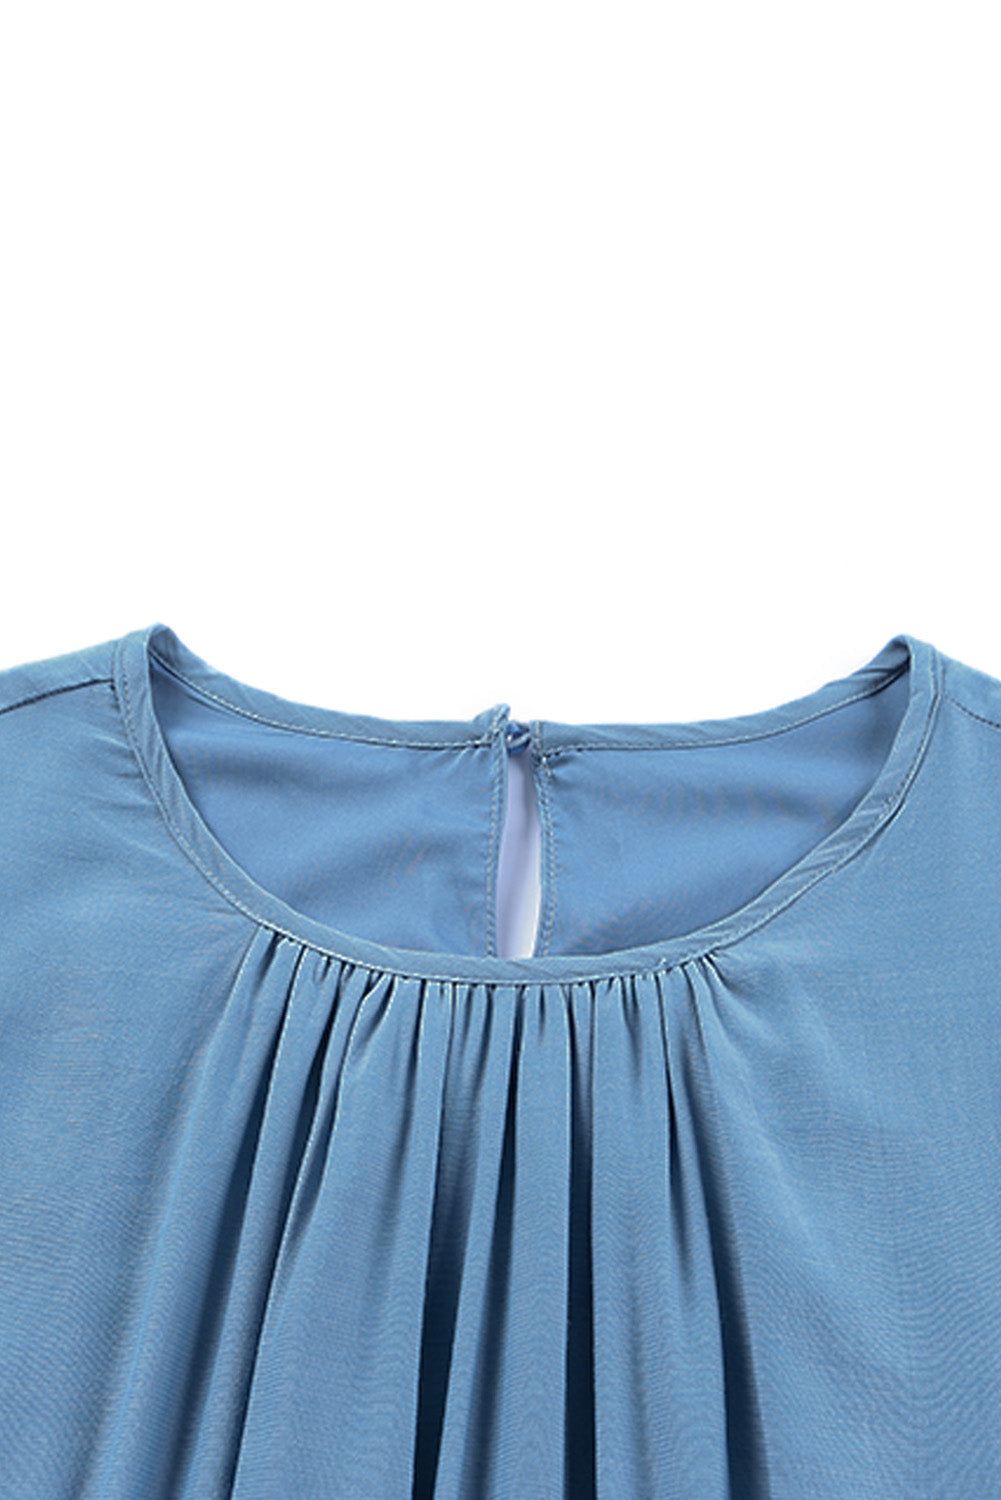 Sky Blue Shirring Tiered Flowy Babydoll Dress